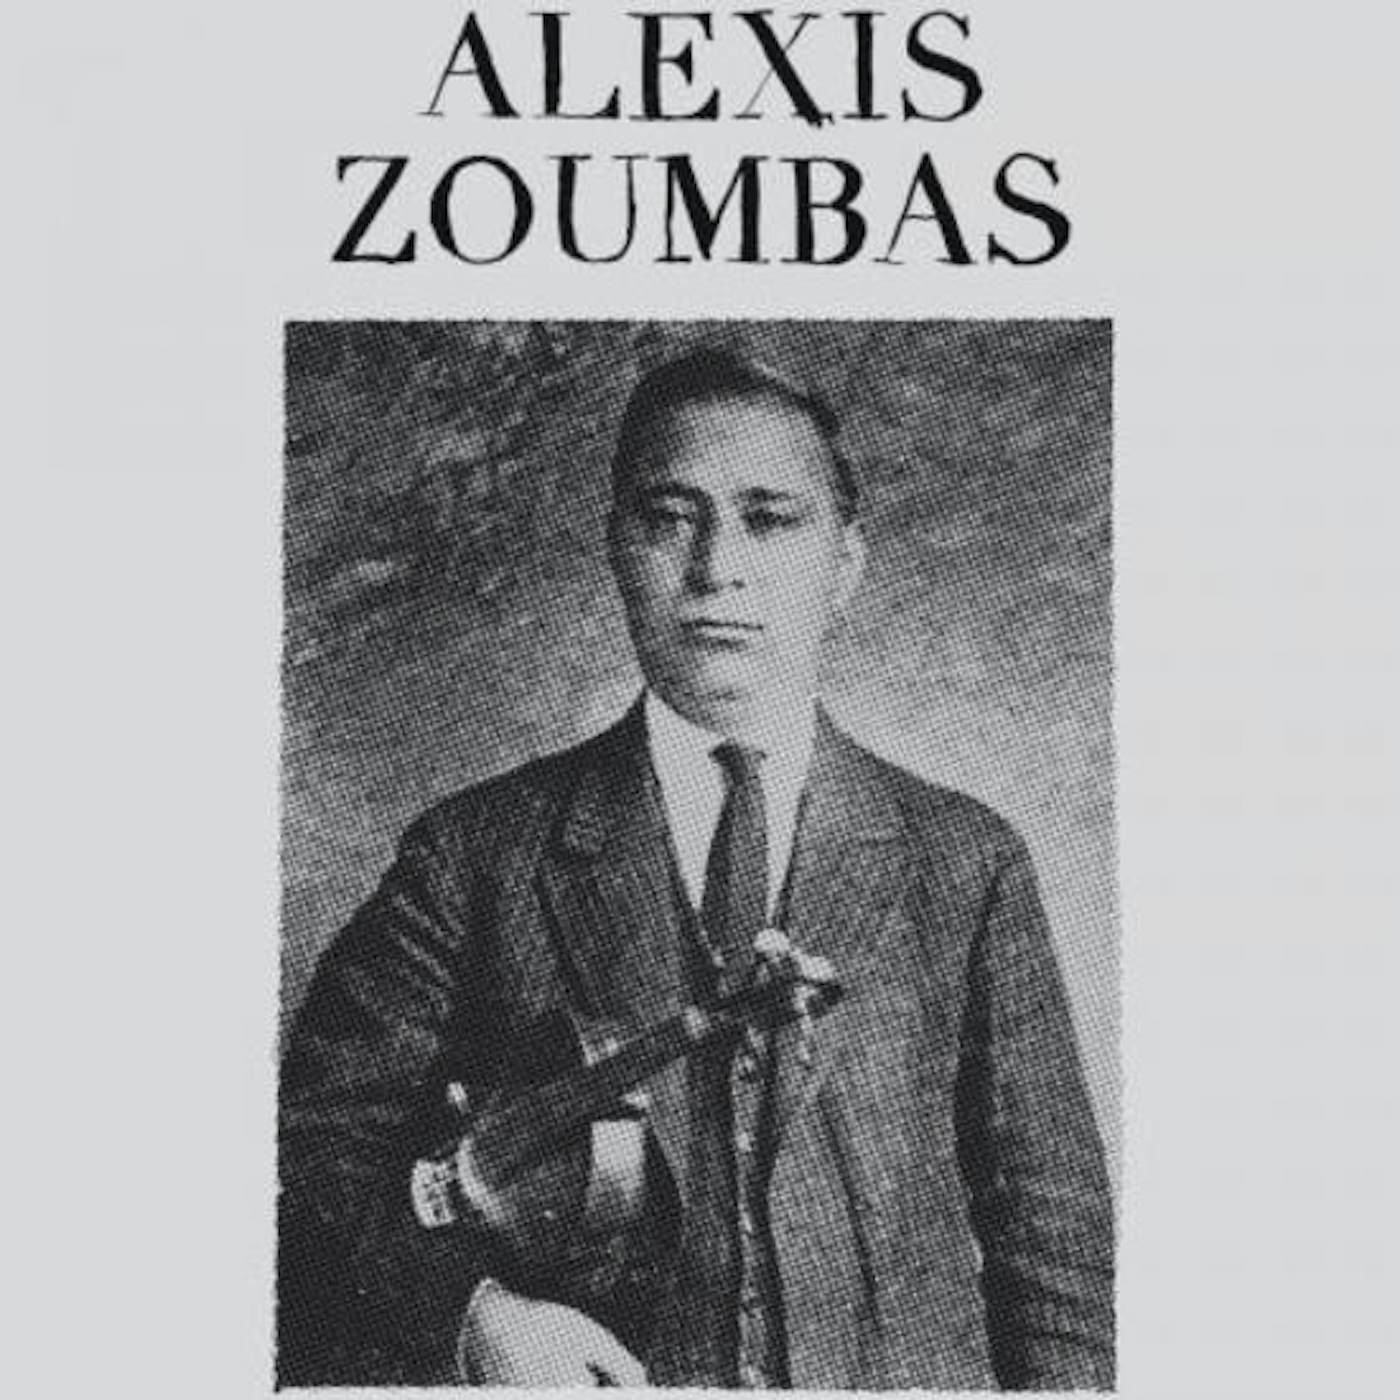 ALEXIS ZOUMBAS Vinyl Record